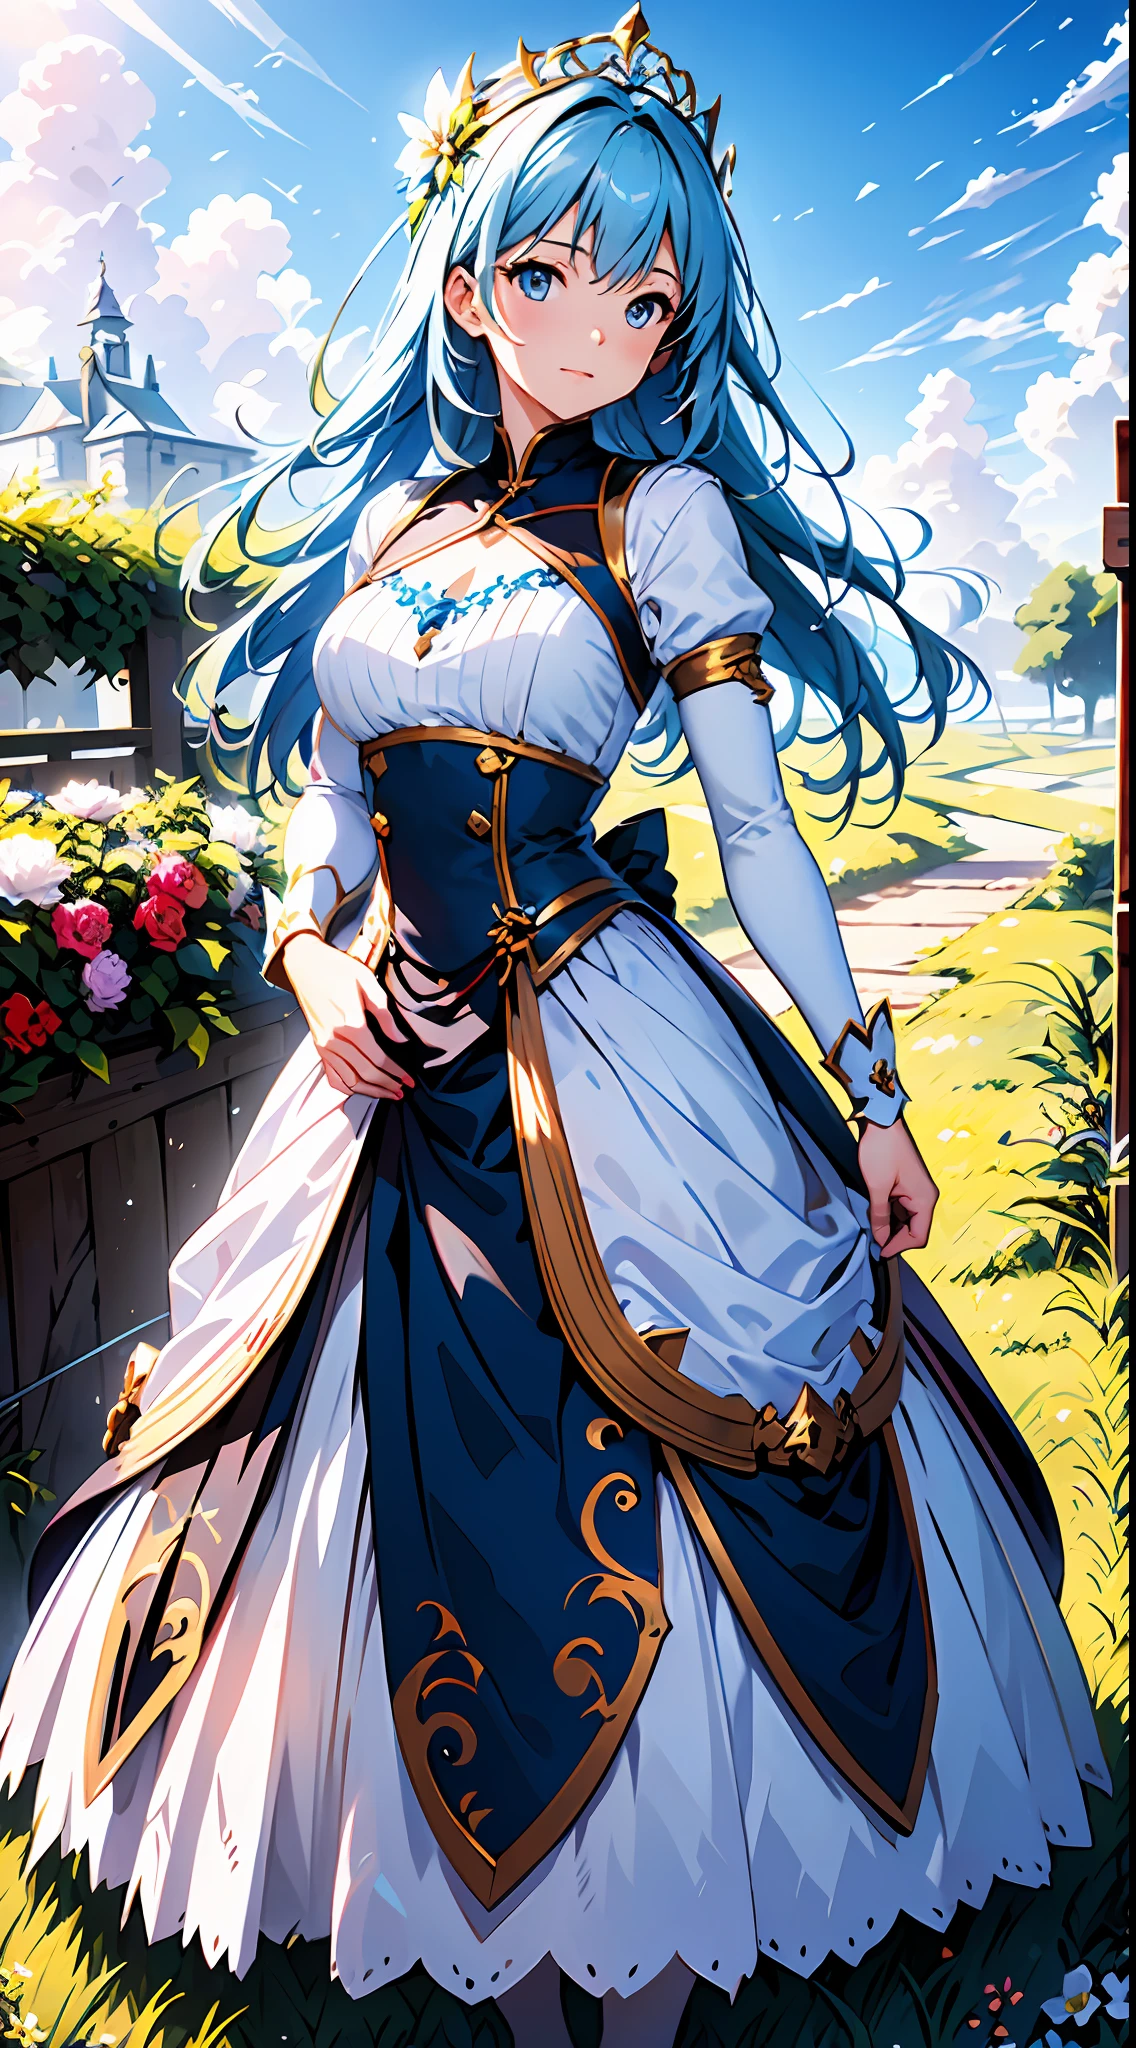 eine Frau in einem weißen Kleid，Blauer Himmel und Wolken im Hintergrund, trägt blaues Kleid，Es sind Blumen darauf, Art germ, Rosla globale Beleuchtung, ein detailreiches Gemälde, Fantasy-Kunst